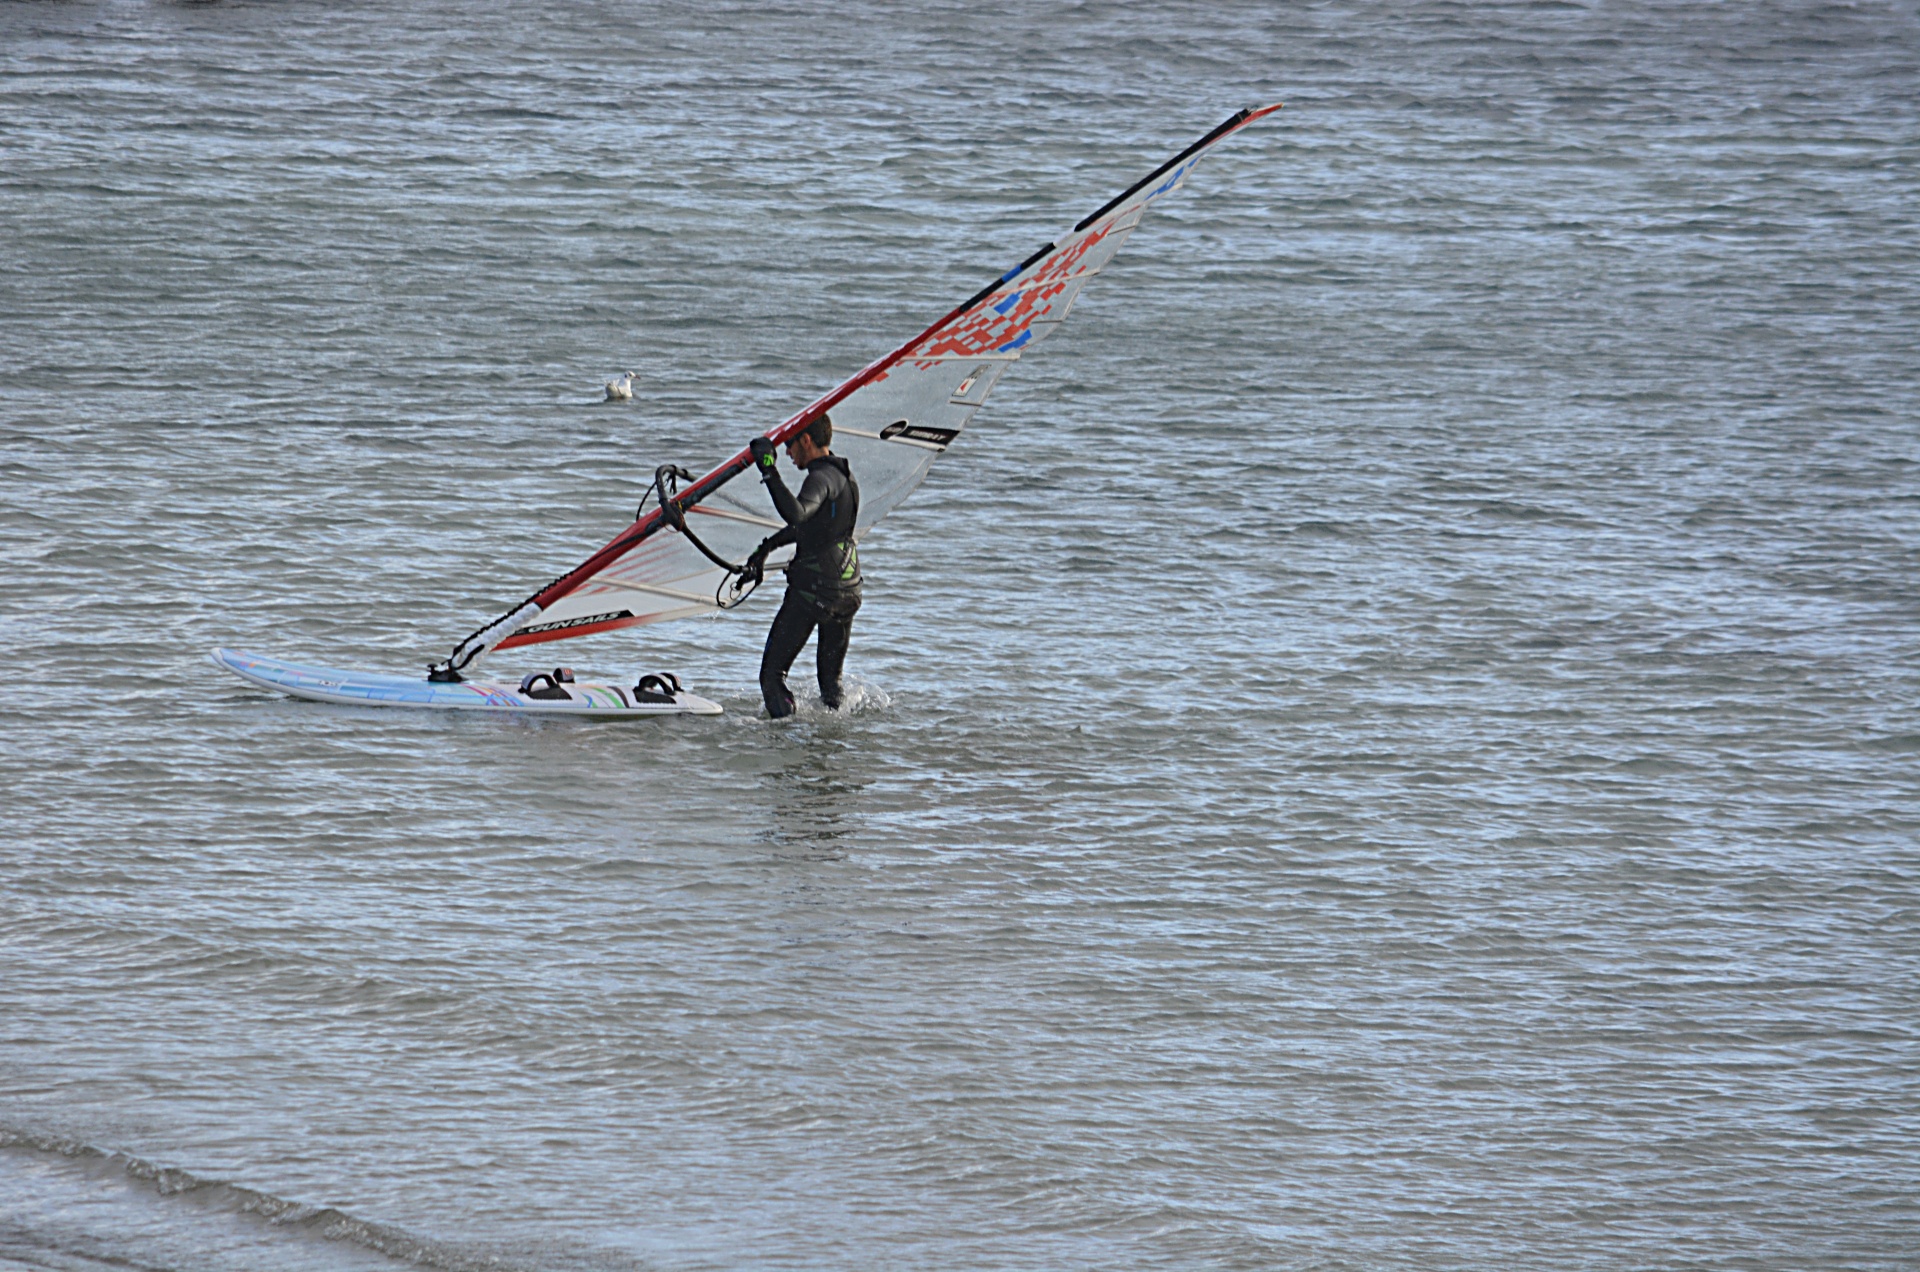 La windsurfista